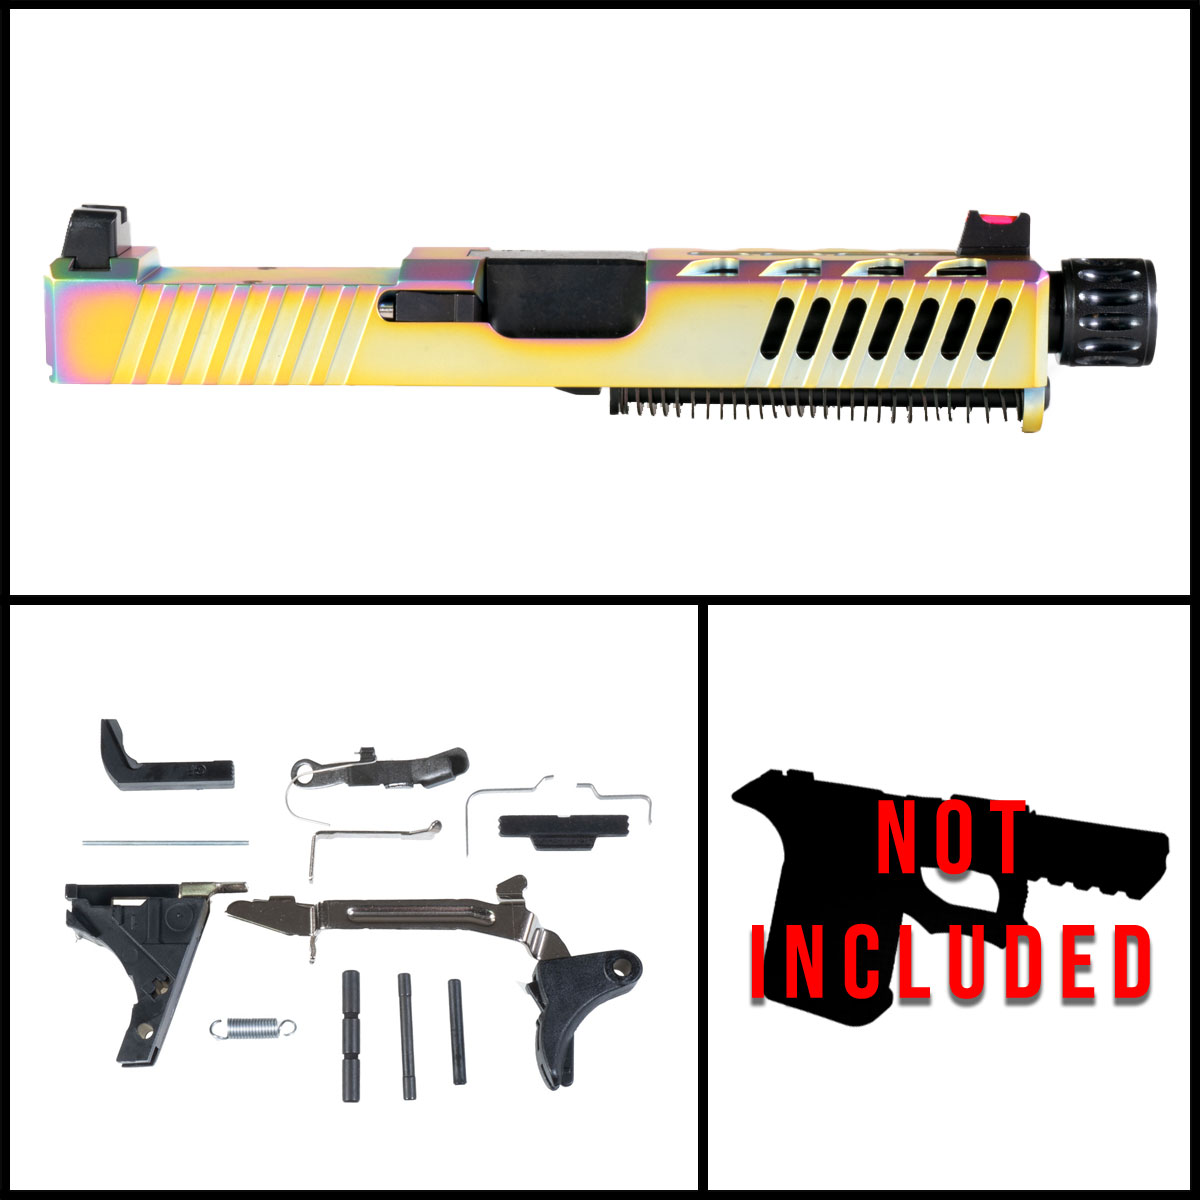 DTT 'Viva Velox' 9mm Full Pistol Build Kits (Everything Minus Frame) - Glock 19 Gen 1-3 Compatible